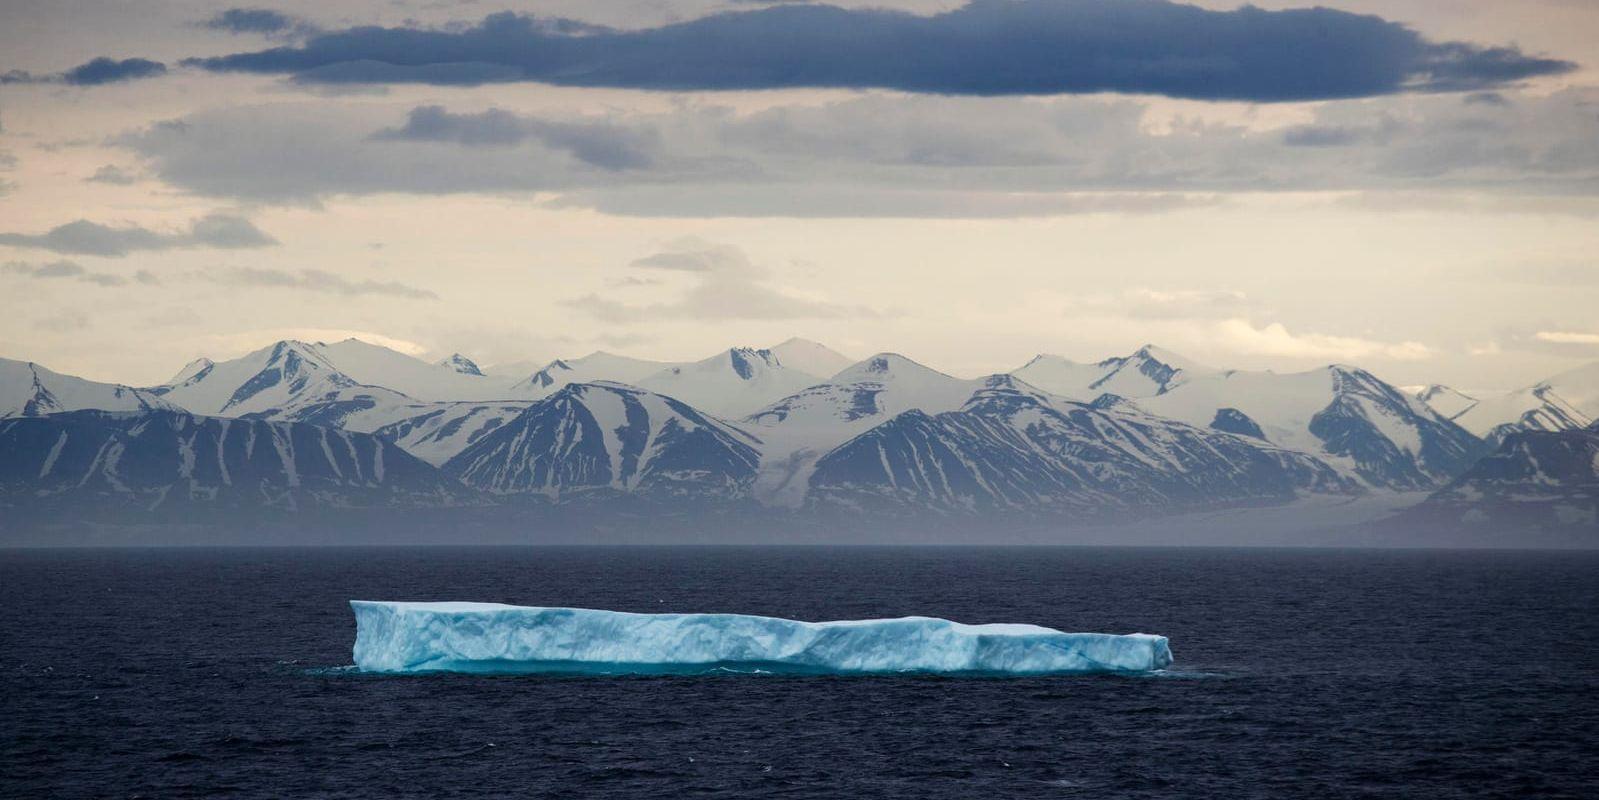 Kunskapen om klimatförändringar i Arktis är bristfällig, visar en studie vid Lunds universitet. Arkivbild